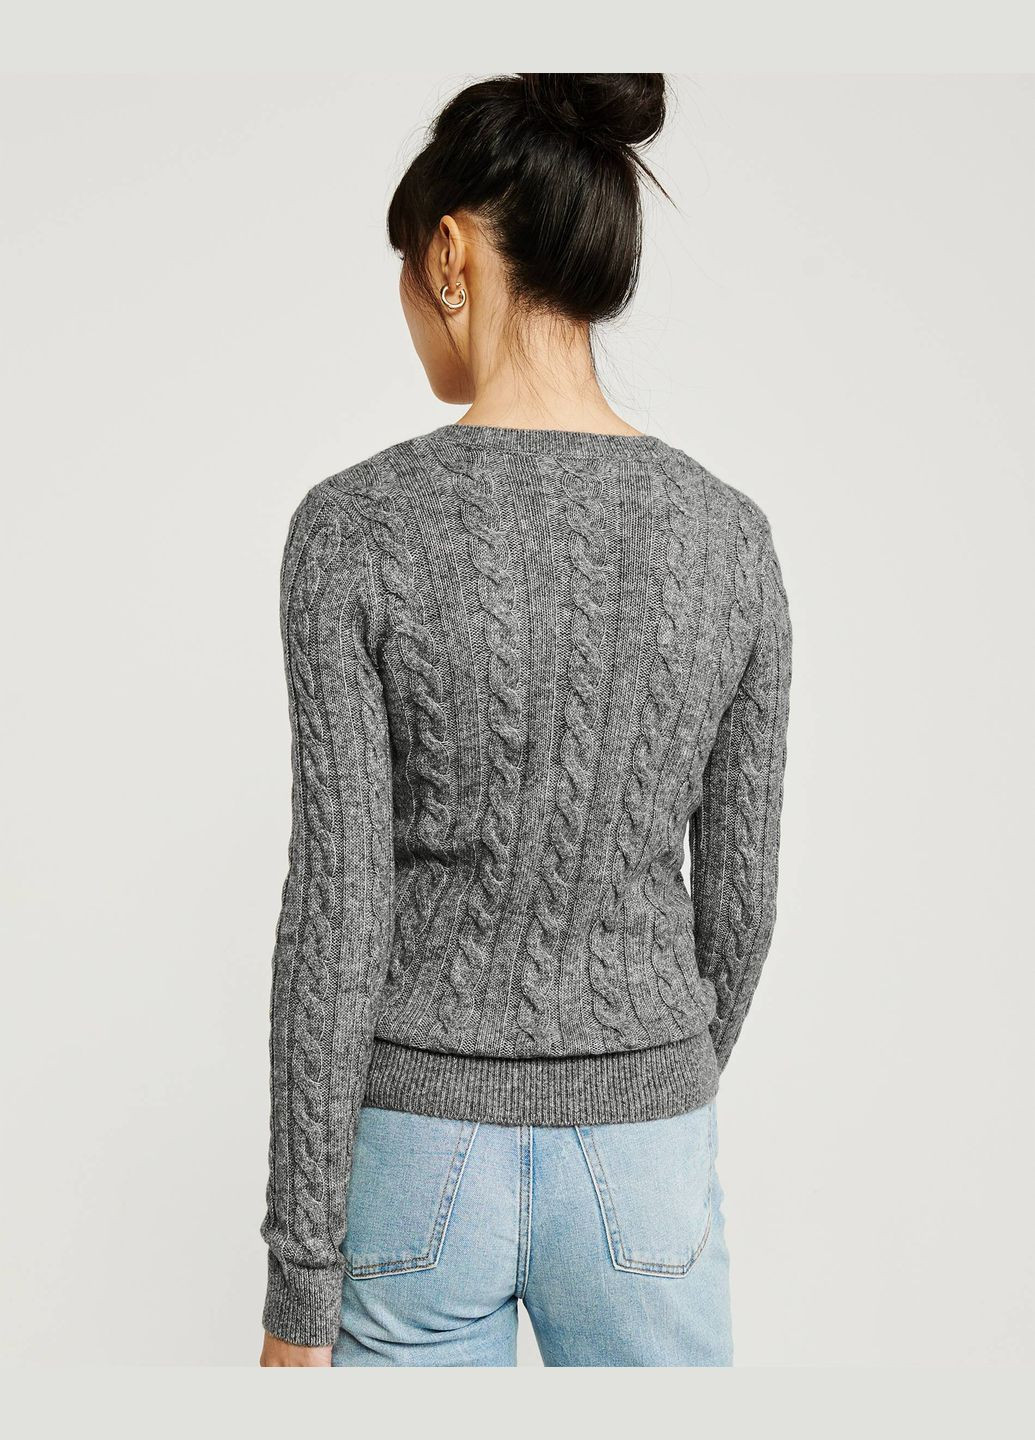 Серый демисезонный свитер женский - свитер af6116w Abercrombie & Fitch